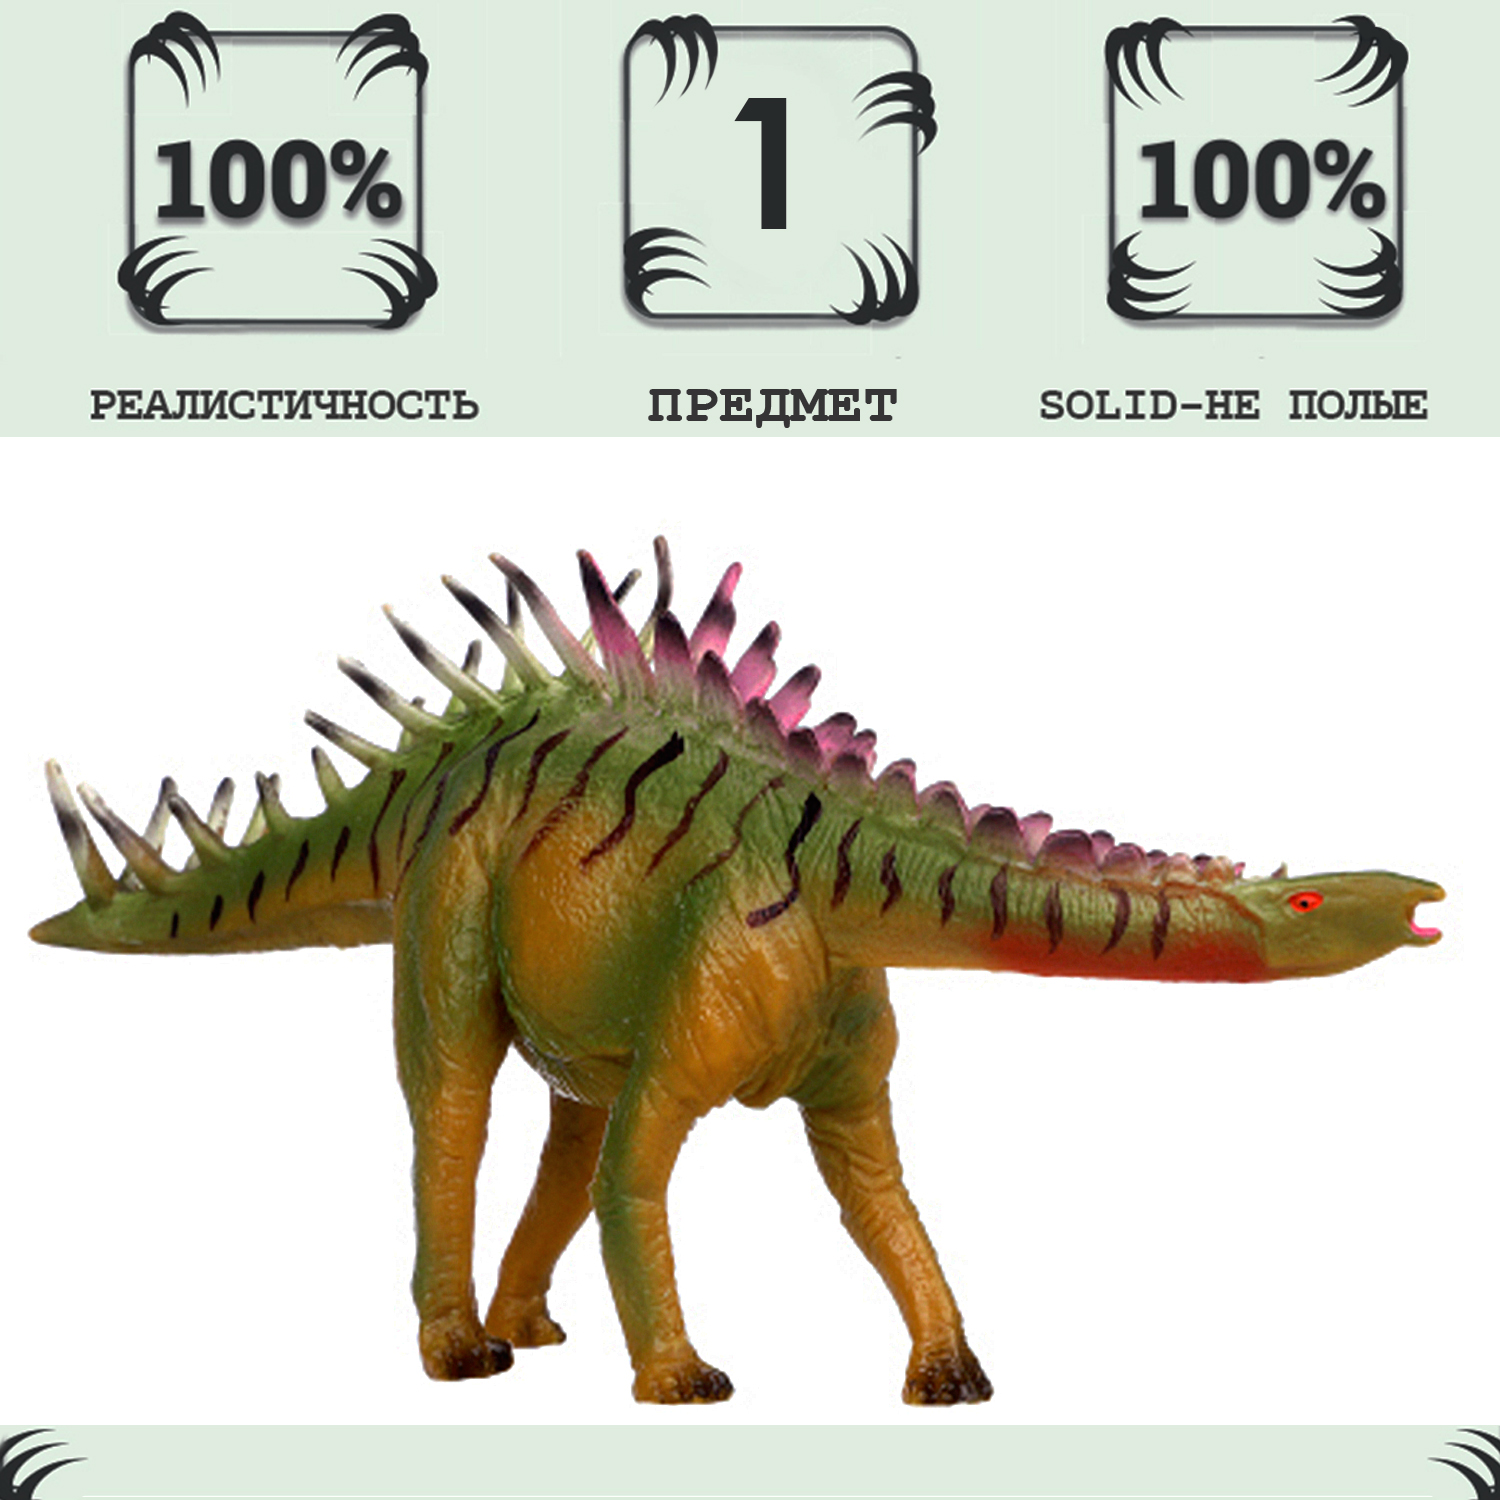 Игрушка динозавр серии Мир динозавров Masai Mara Мирагея, Мирагайя MM216-376